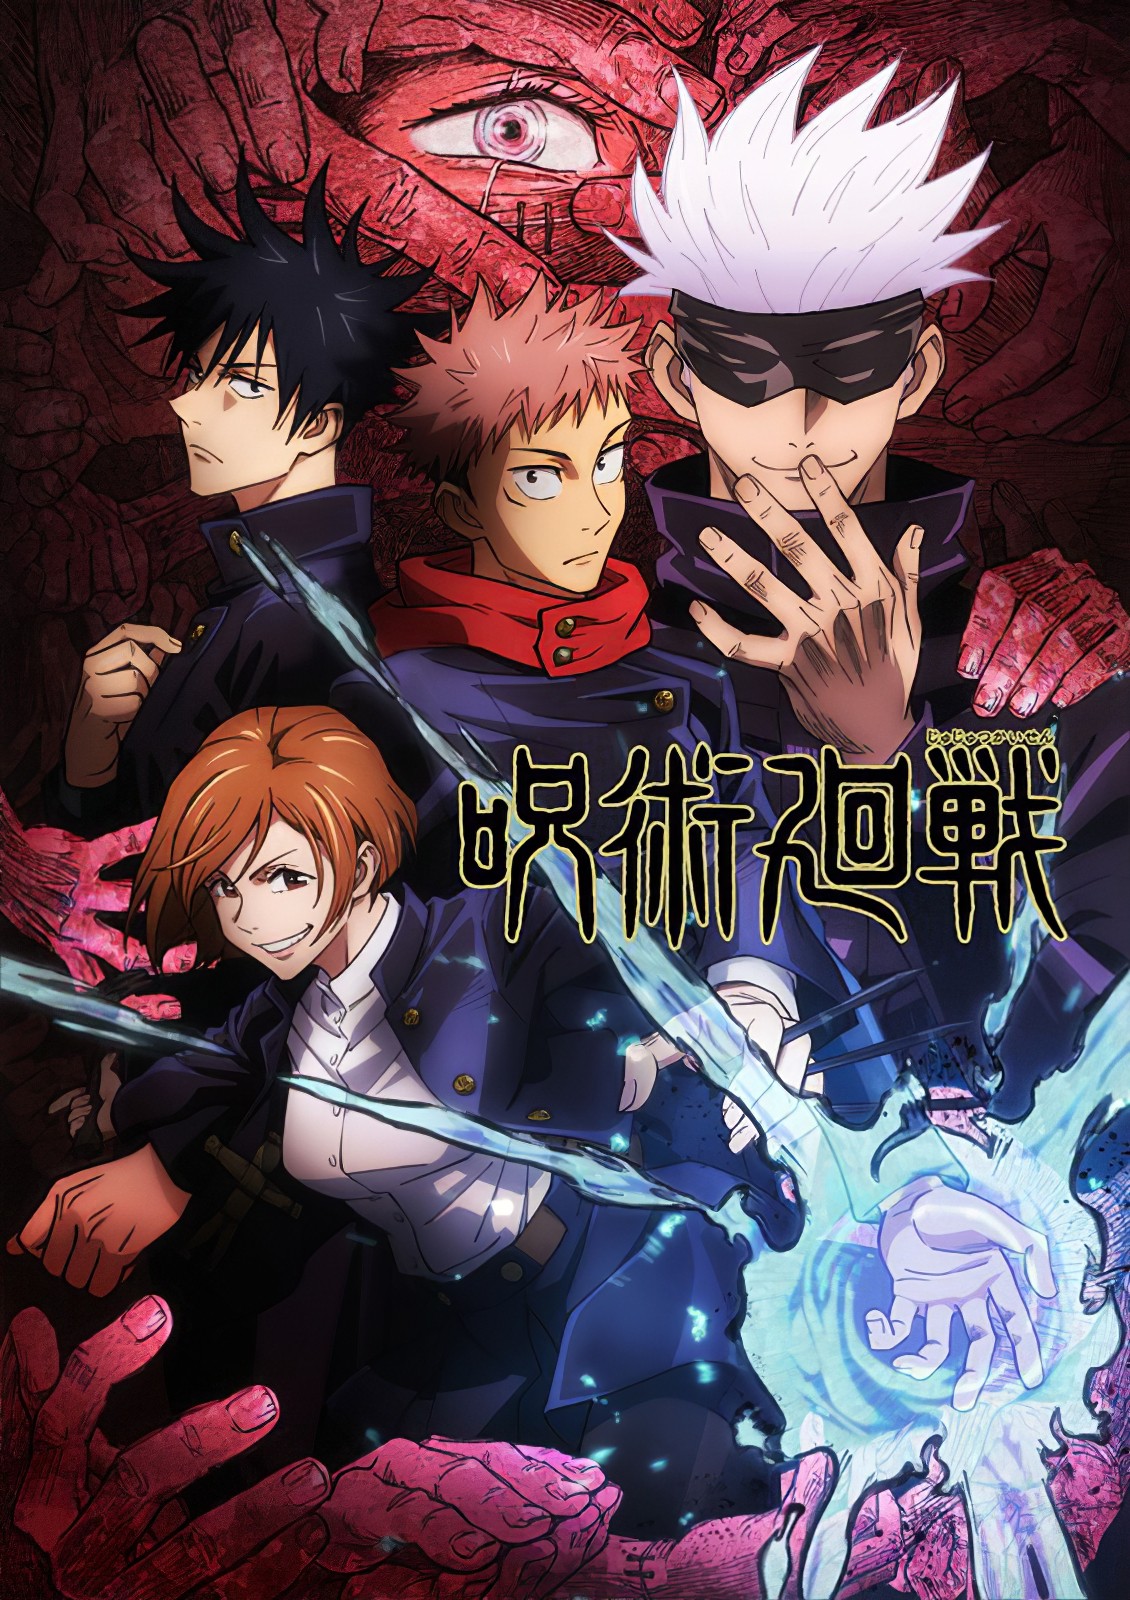 El anime original Ars no Kyojuu fecha su estreno con un avance — Kudasai